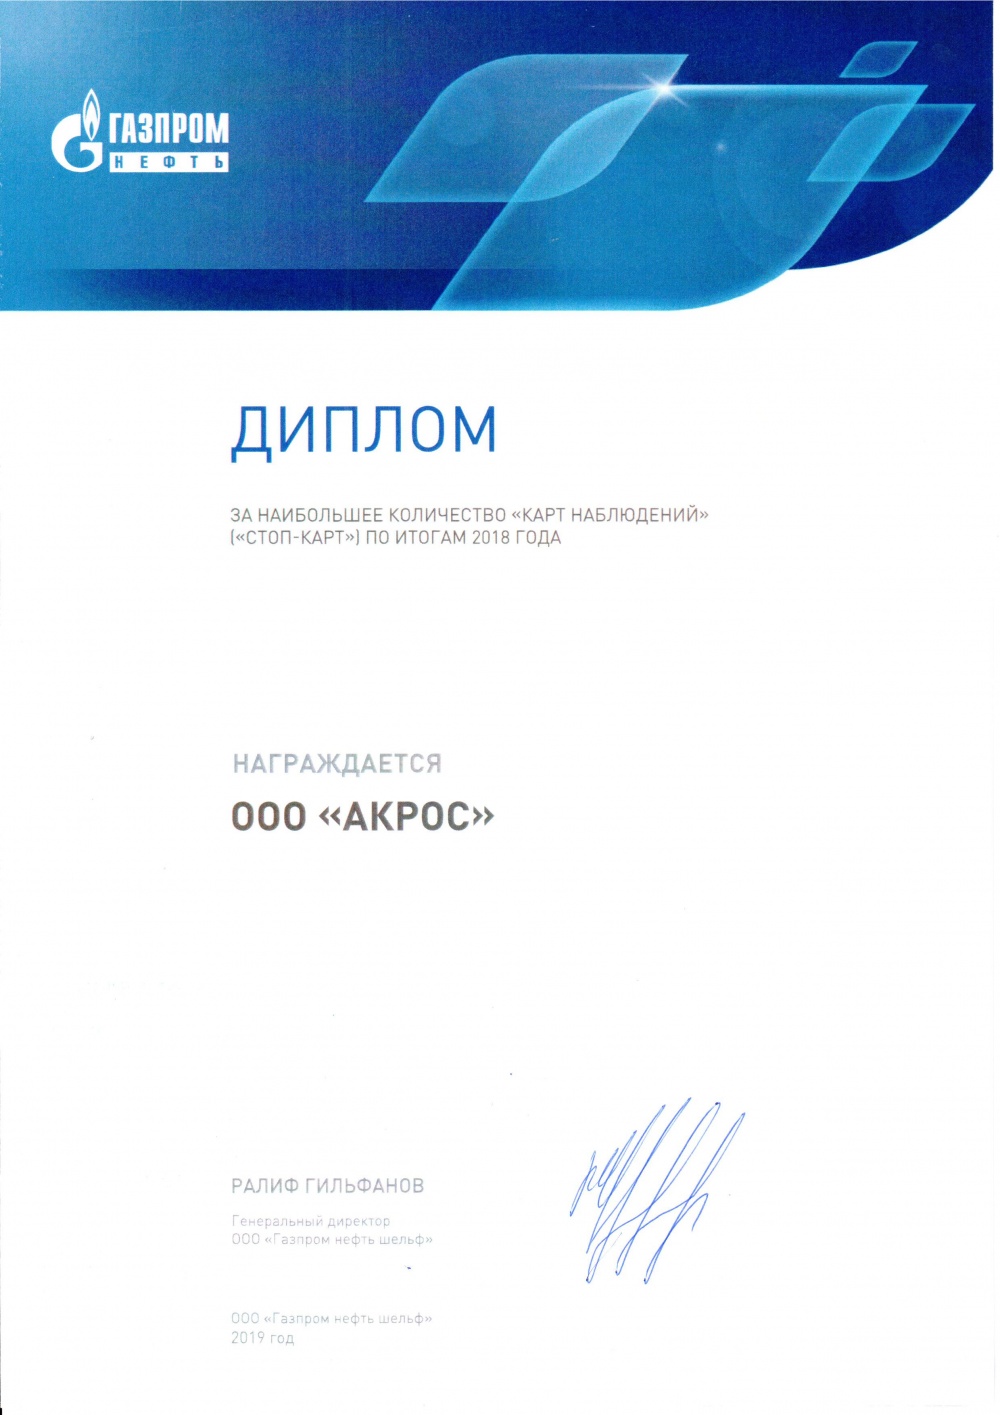 Диплом за наибольшее количество стоп-карт 2018 от Газпром нефть шельф